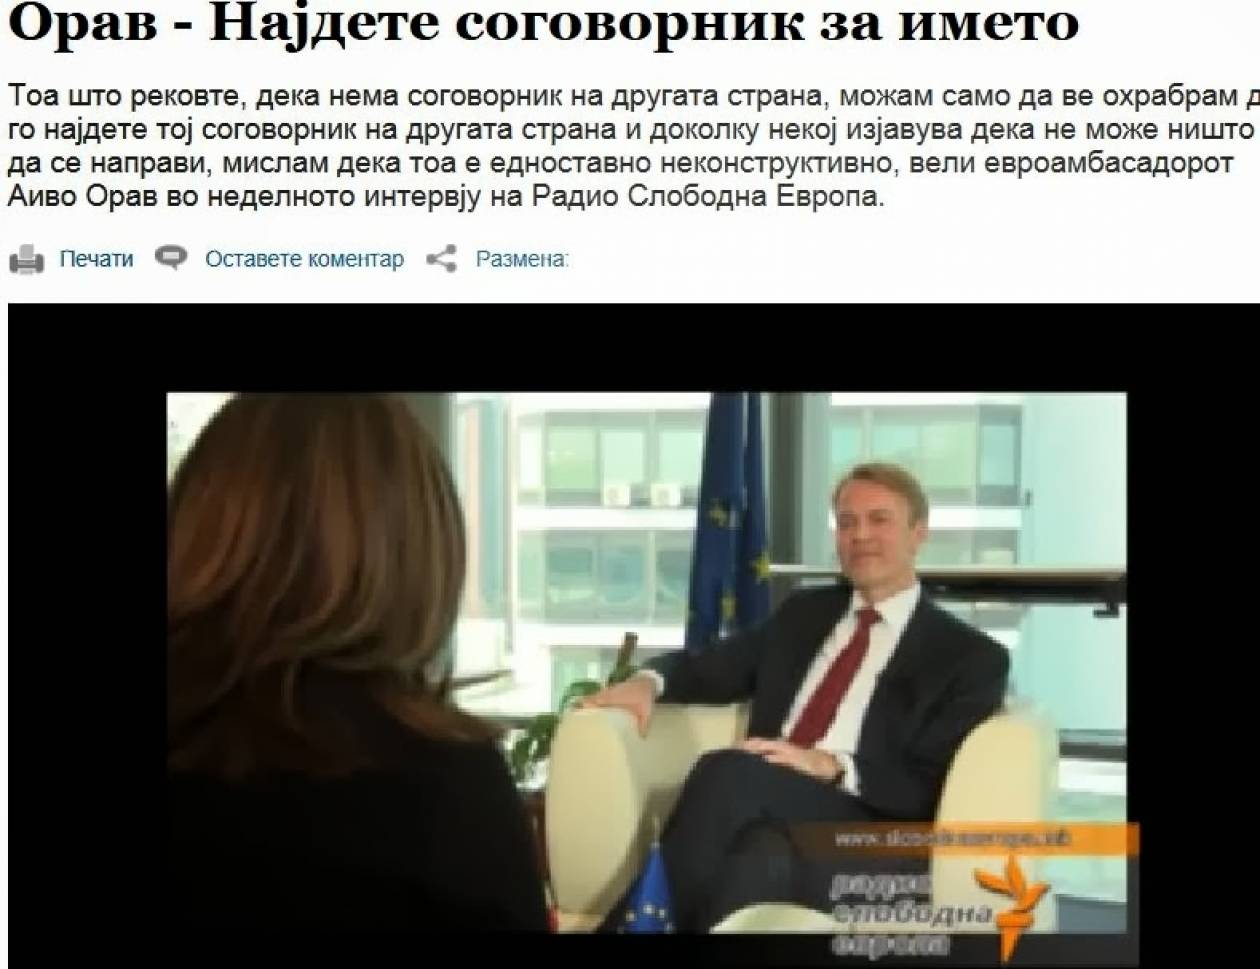 Πρέσβης ΕΕ στα Σκόπια: «Δεν υπάρχει συνομιλητής από την άλλη πλευρά»